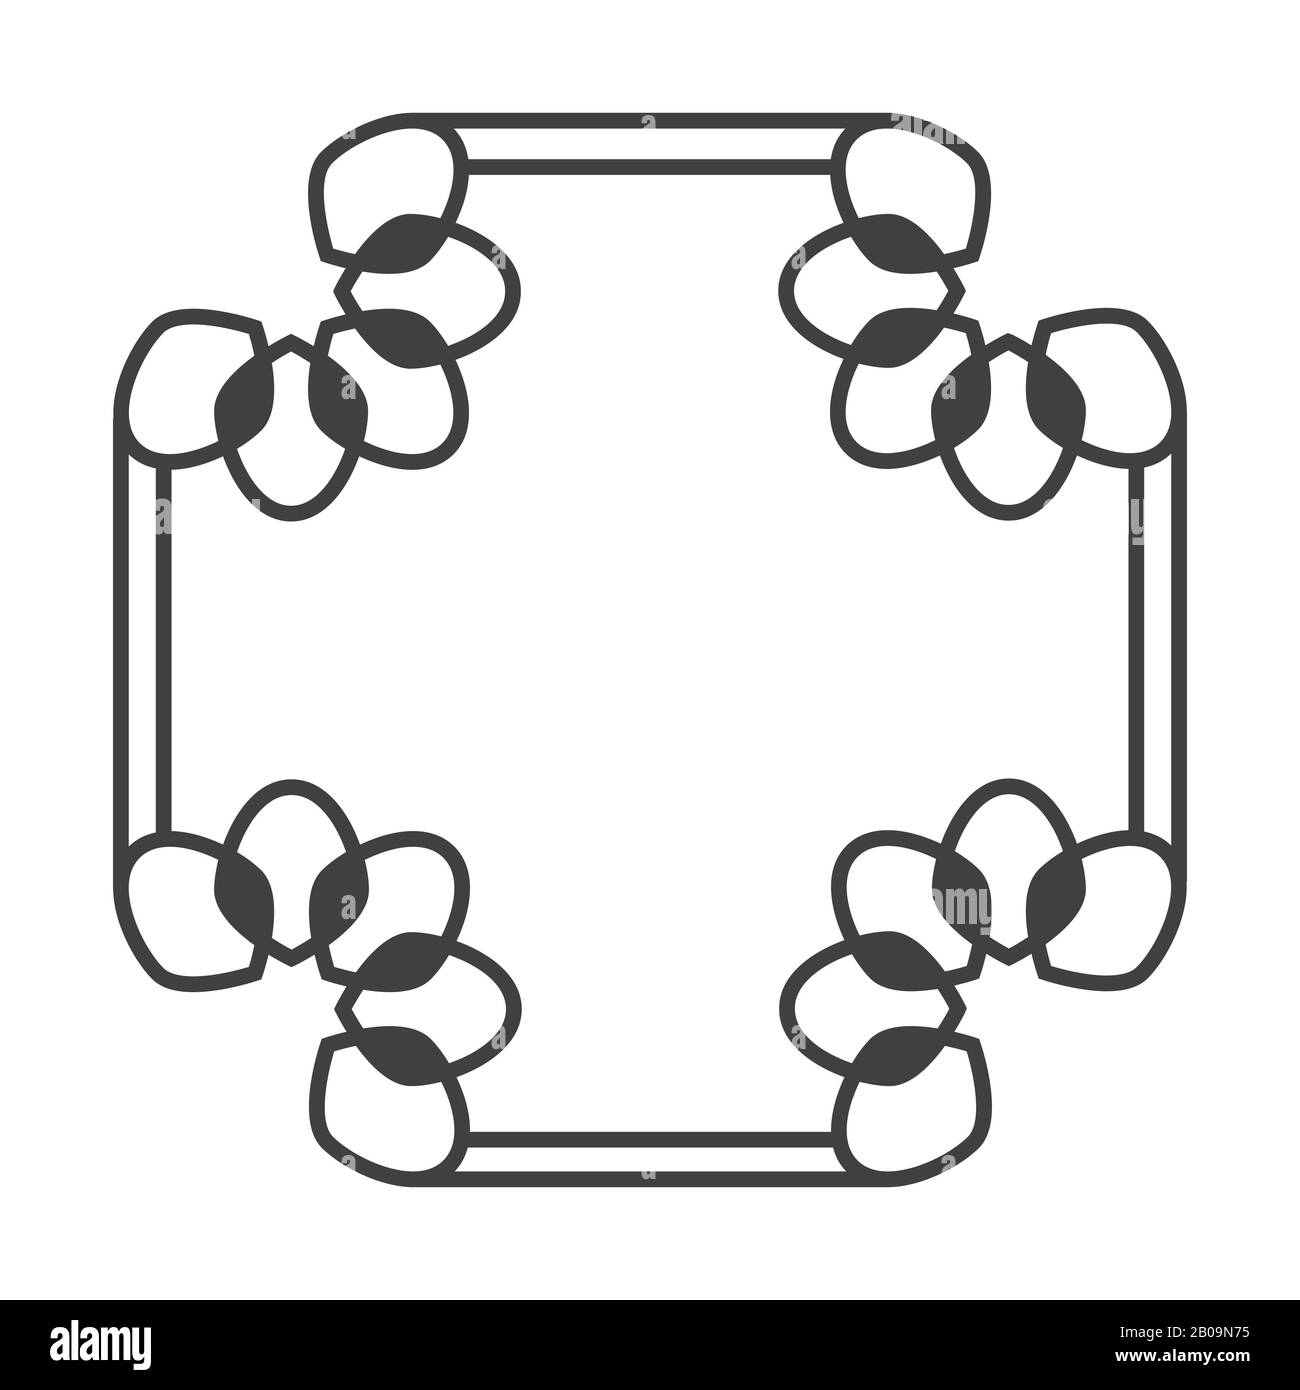 Cadre rétro vectoriel carré asiatique en noir et blanc avec illustration d'éléments floraux Illustration de Vecteur